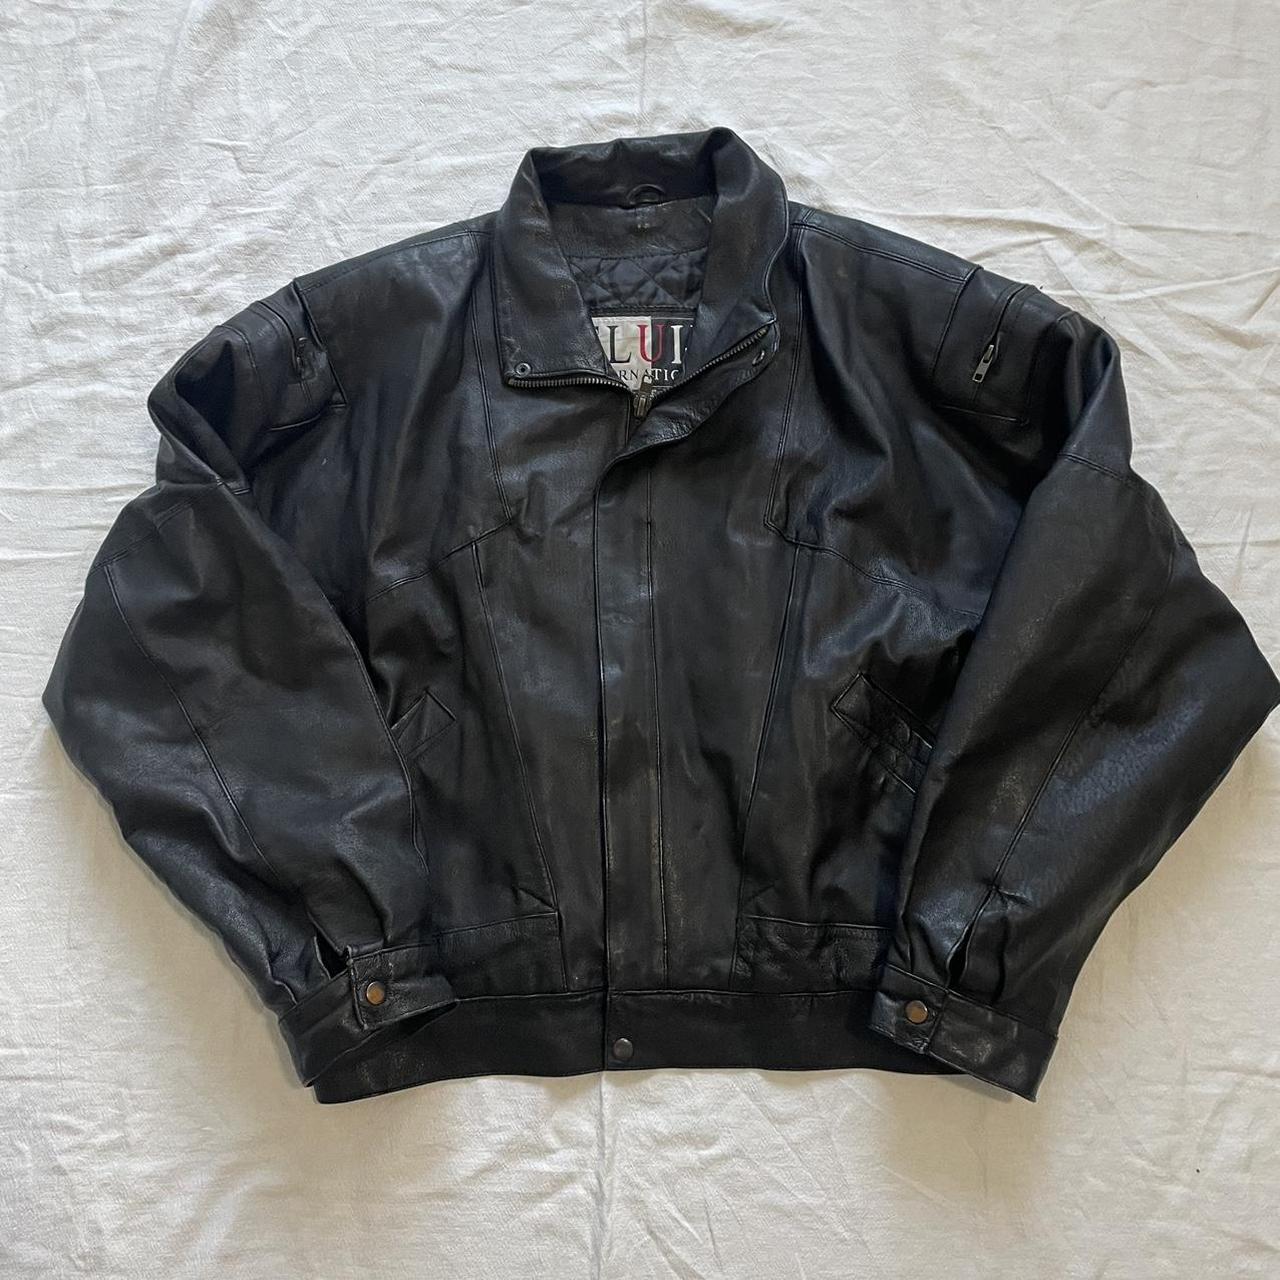 Sick black leather vintage bomber jacket ・₊ ~... - Depop